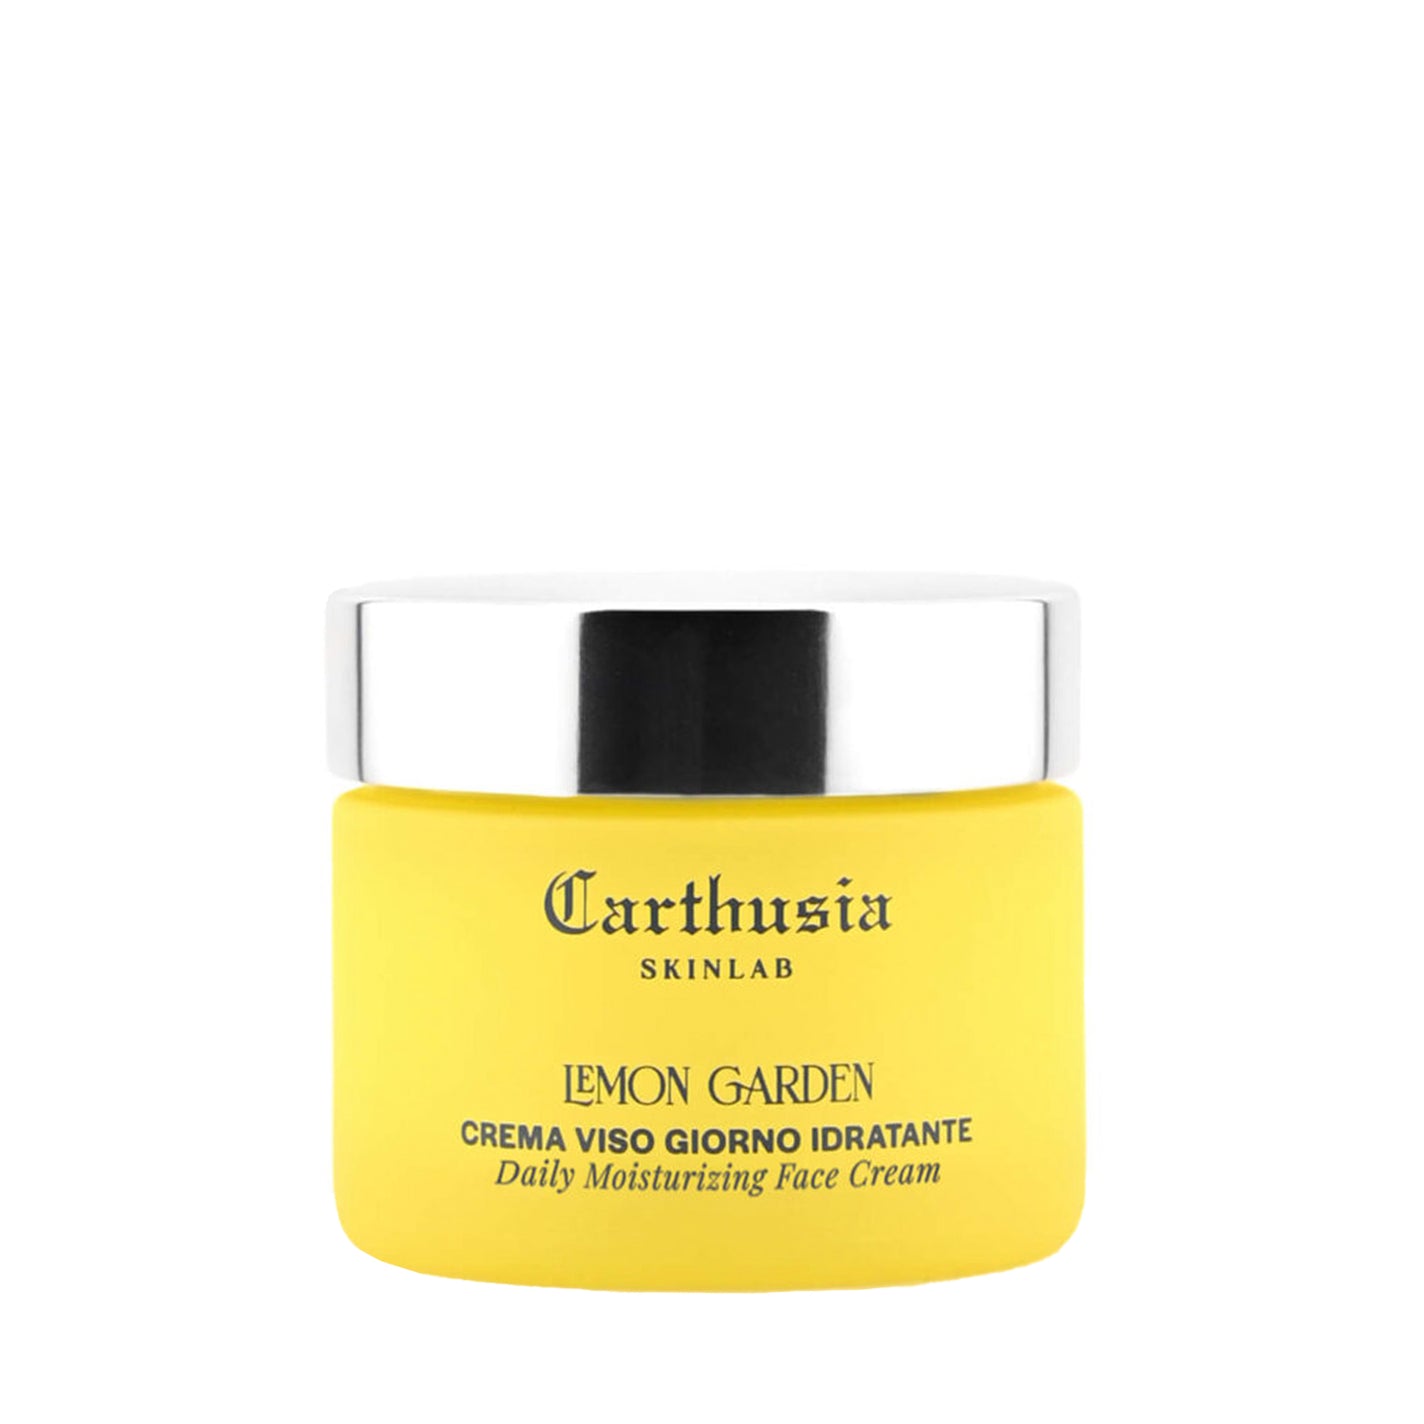 CARTHUSIA Lemon Garden Daily Face Cream